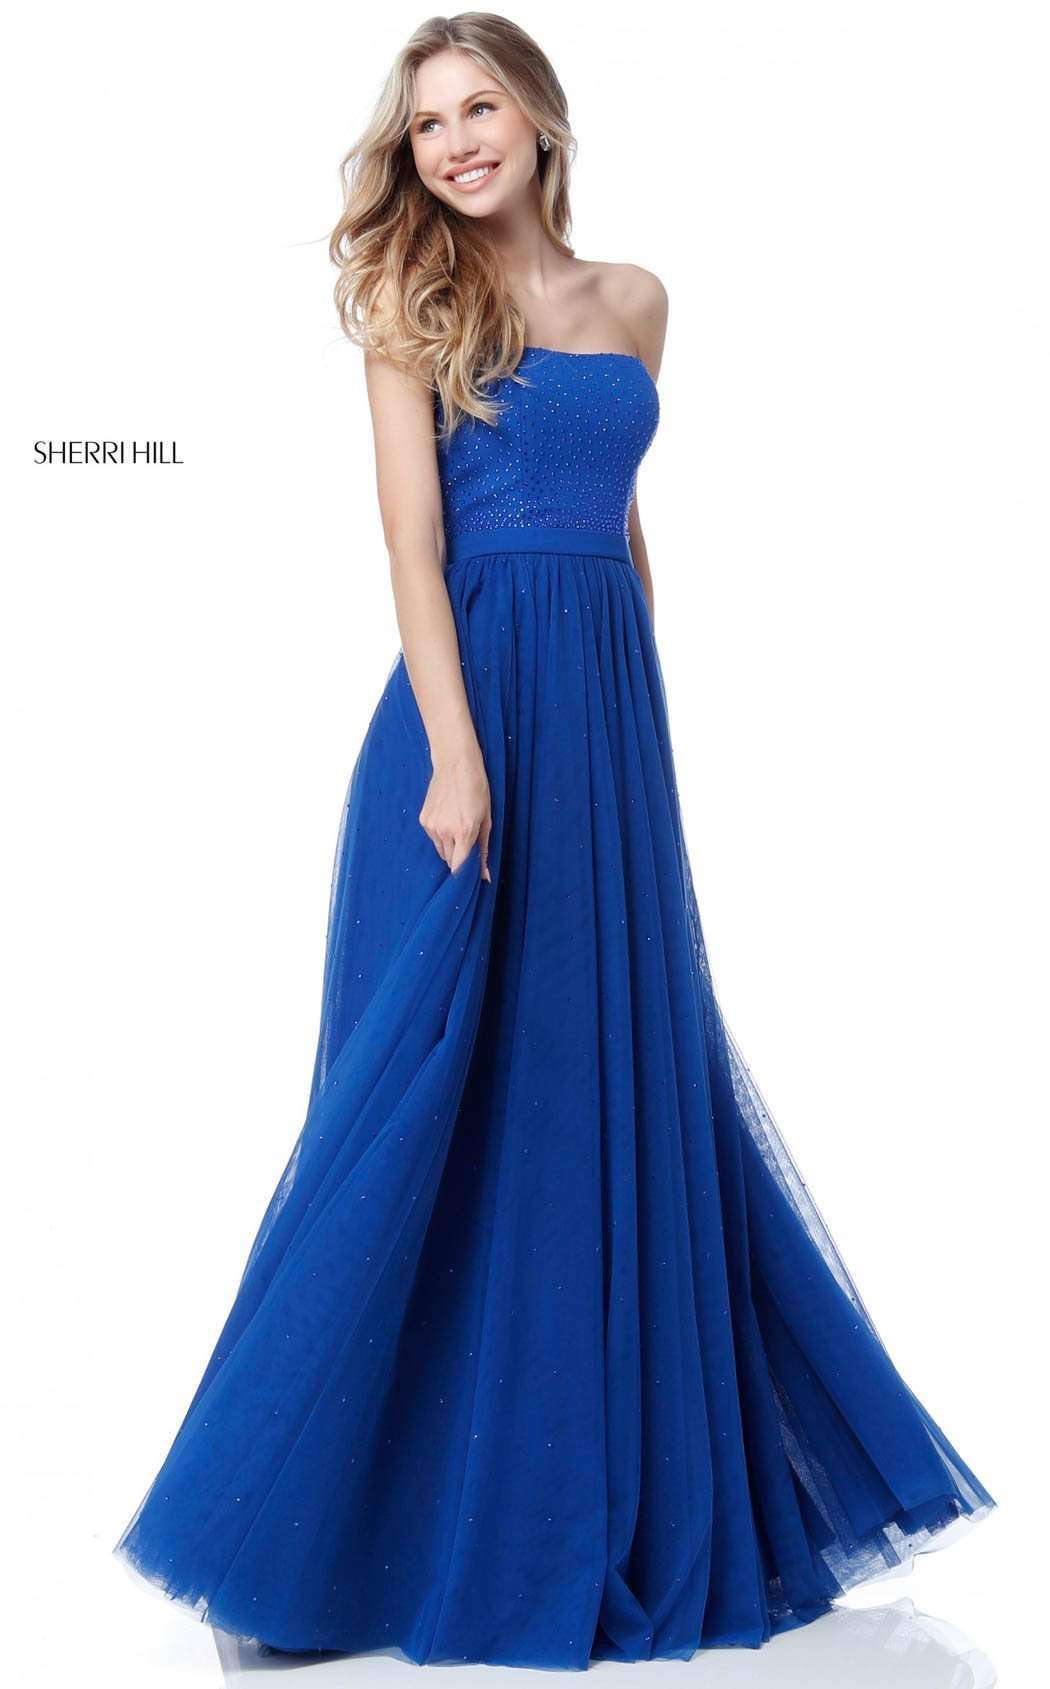 Sherri Hill 51667 Dress | Buy Designer Gowns & Evening Dresses ...